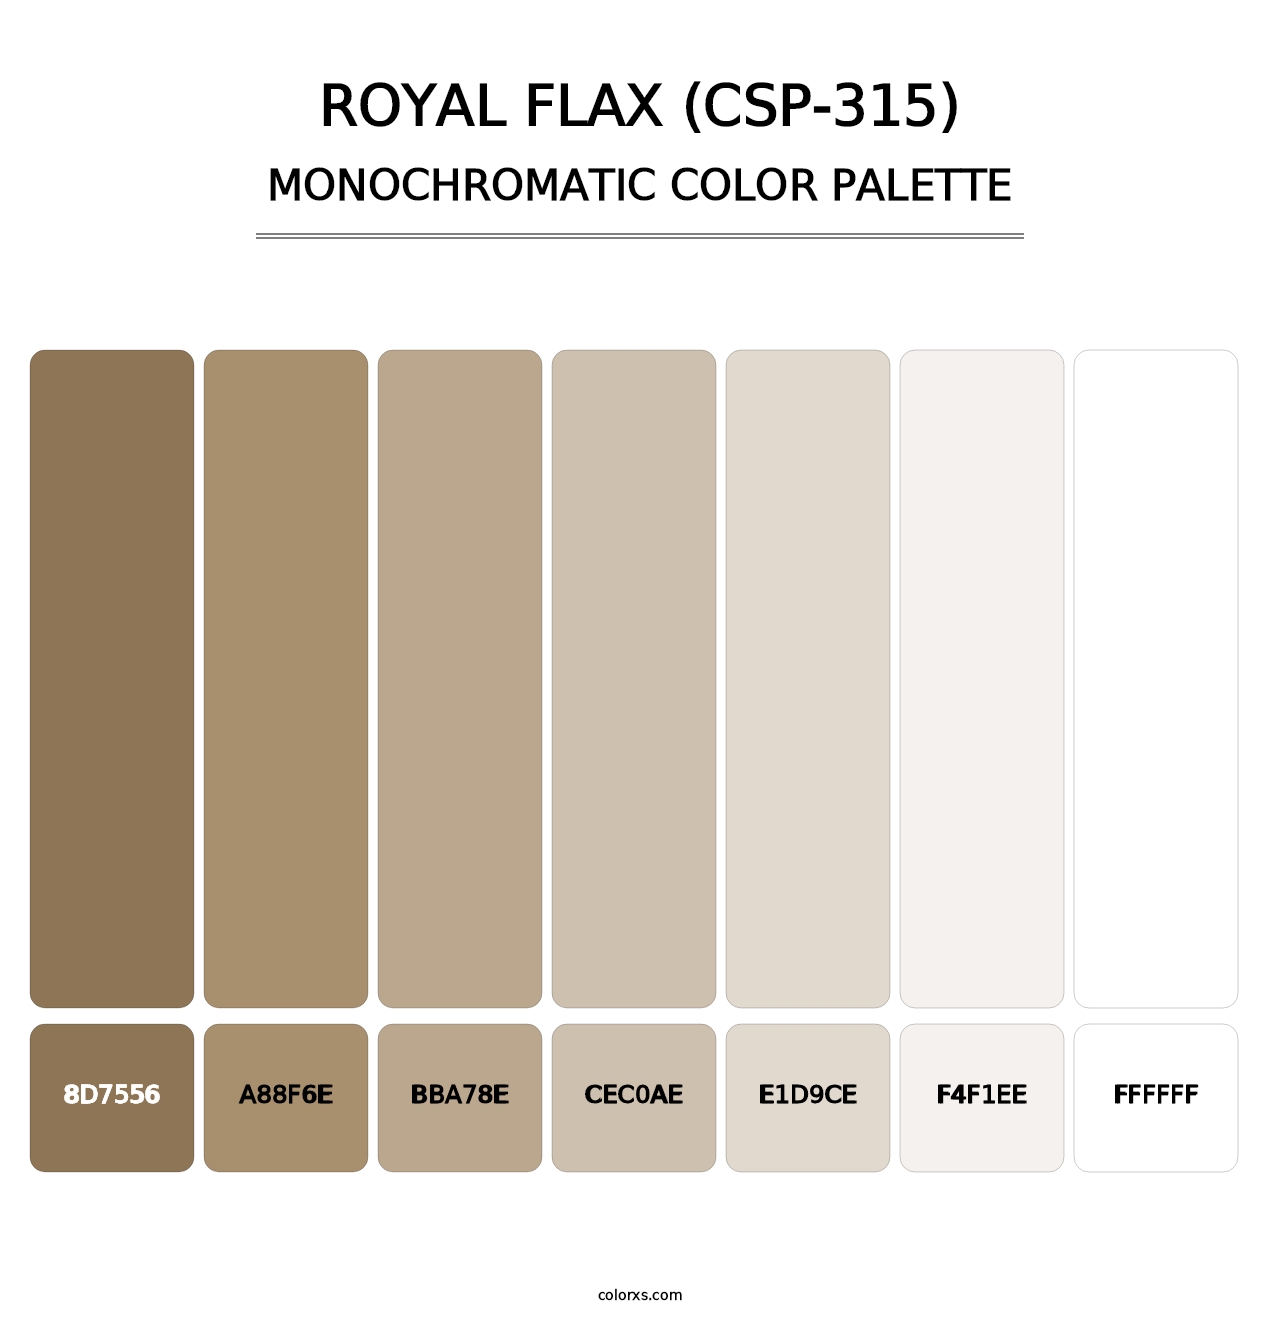 Royal Flax (CSP-315) - Monochromatic Color Palette